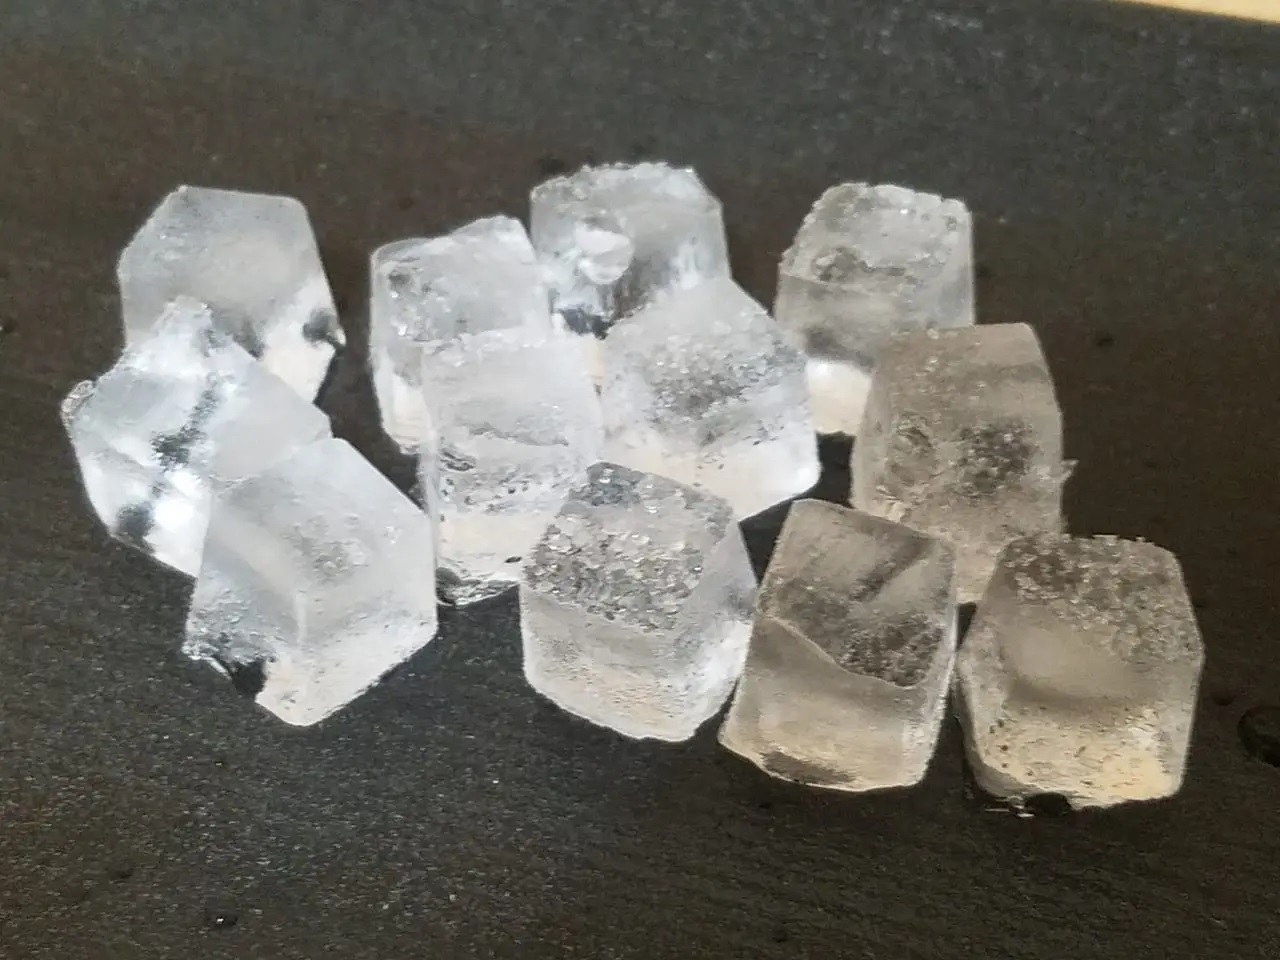 町田房蔵は「あいすくりん」の製造に氷と塩を使用したとか。※写真は氷のイメージであり、本文とは関係ありません。